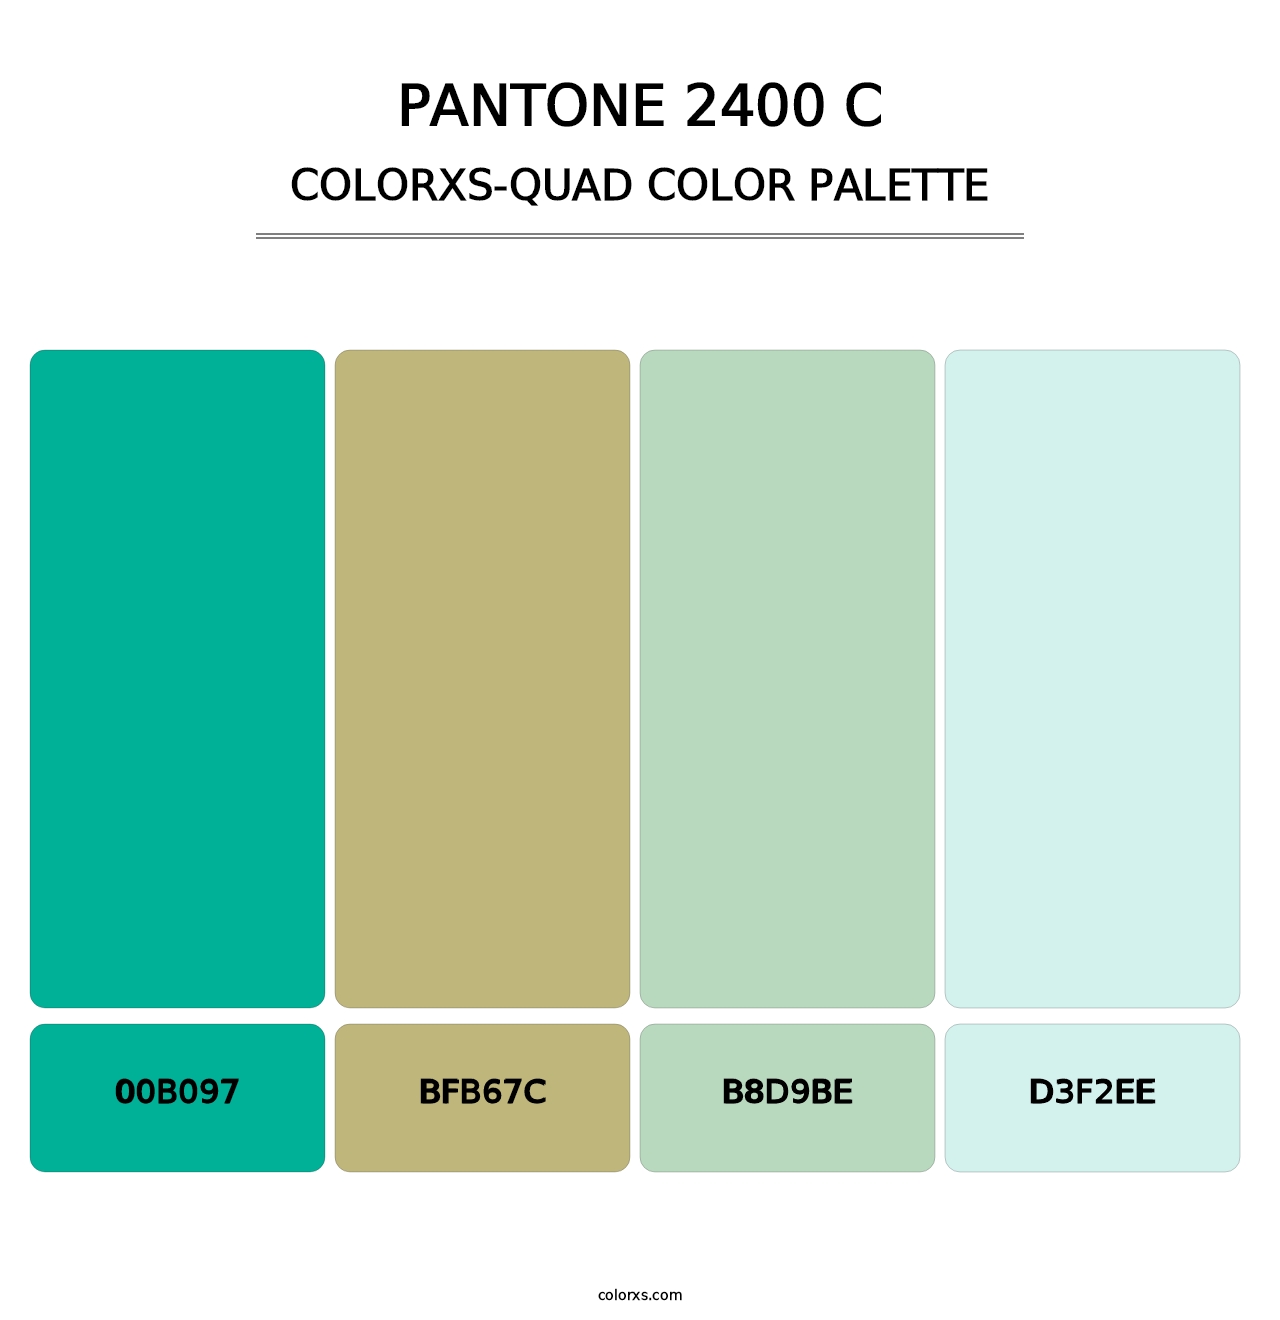 PANTONE 2400 C - Colorxs Quad Palette